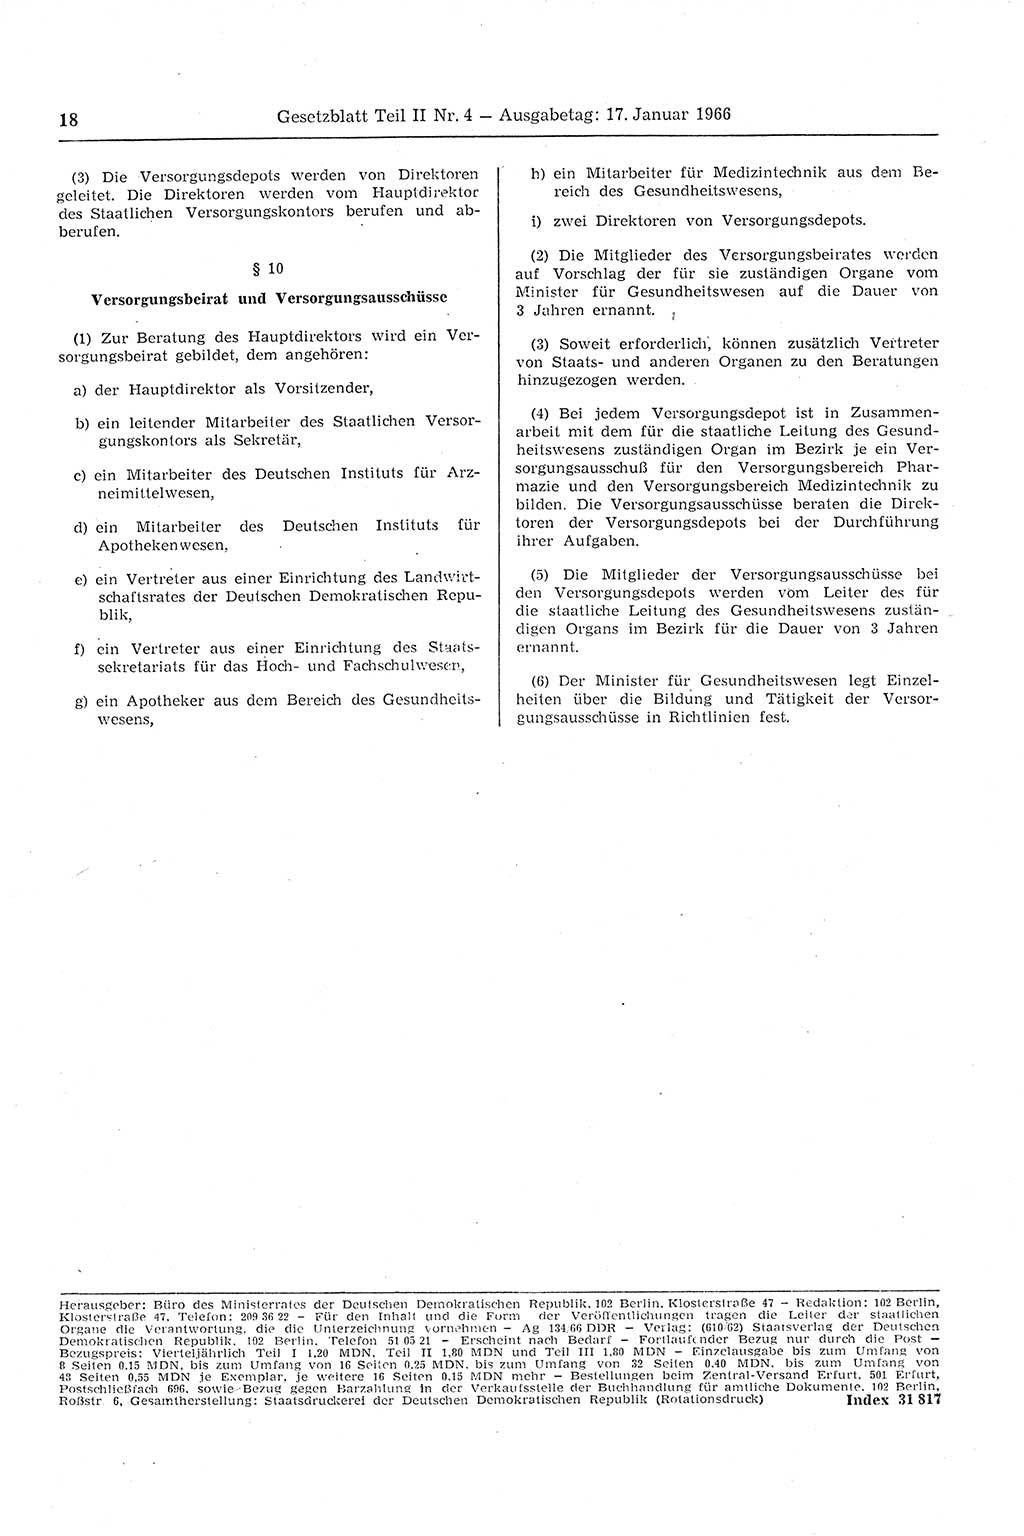 Gesetzblatt (GBl.) der Deutschen Demokratischen Republik (DDR) Teil ⅠⅠ 1966, Seite 18 (GBl. DDR ⅠⅠ 1966, S. 18)